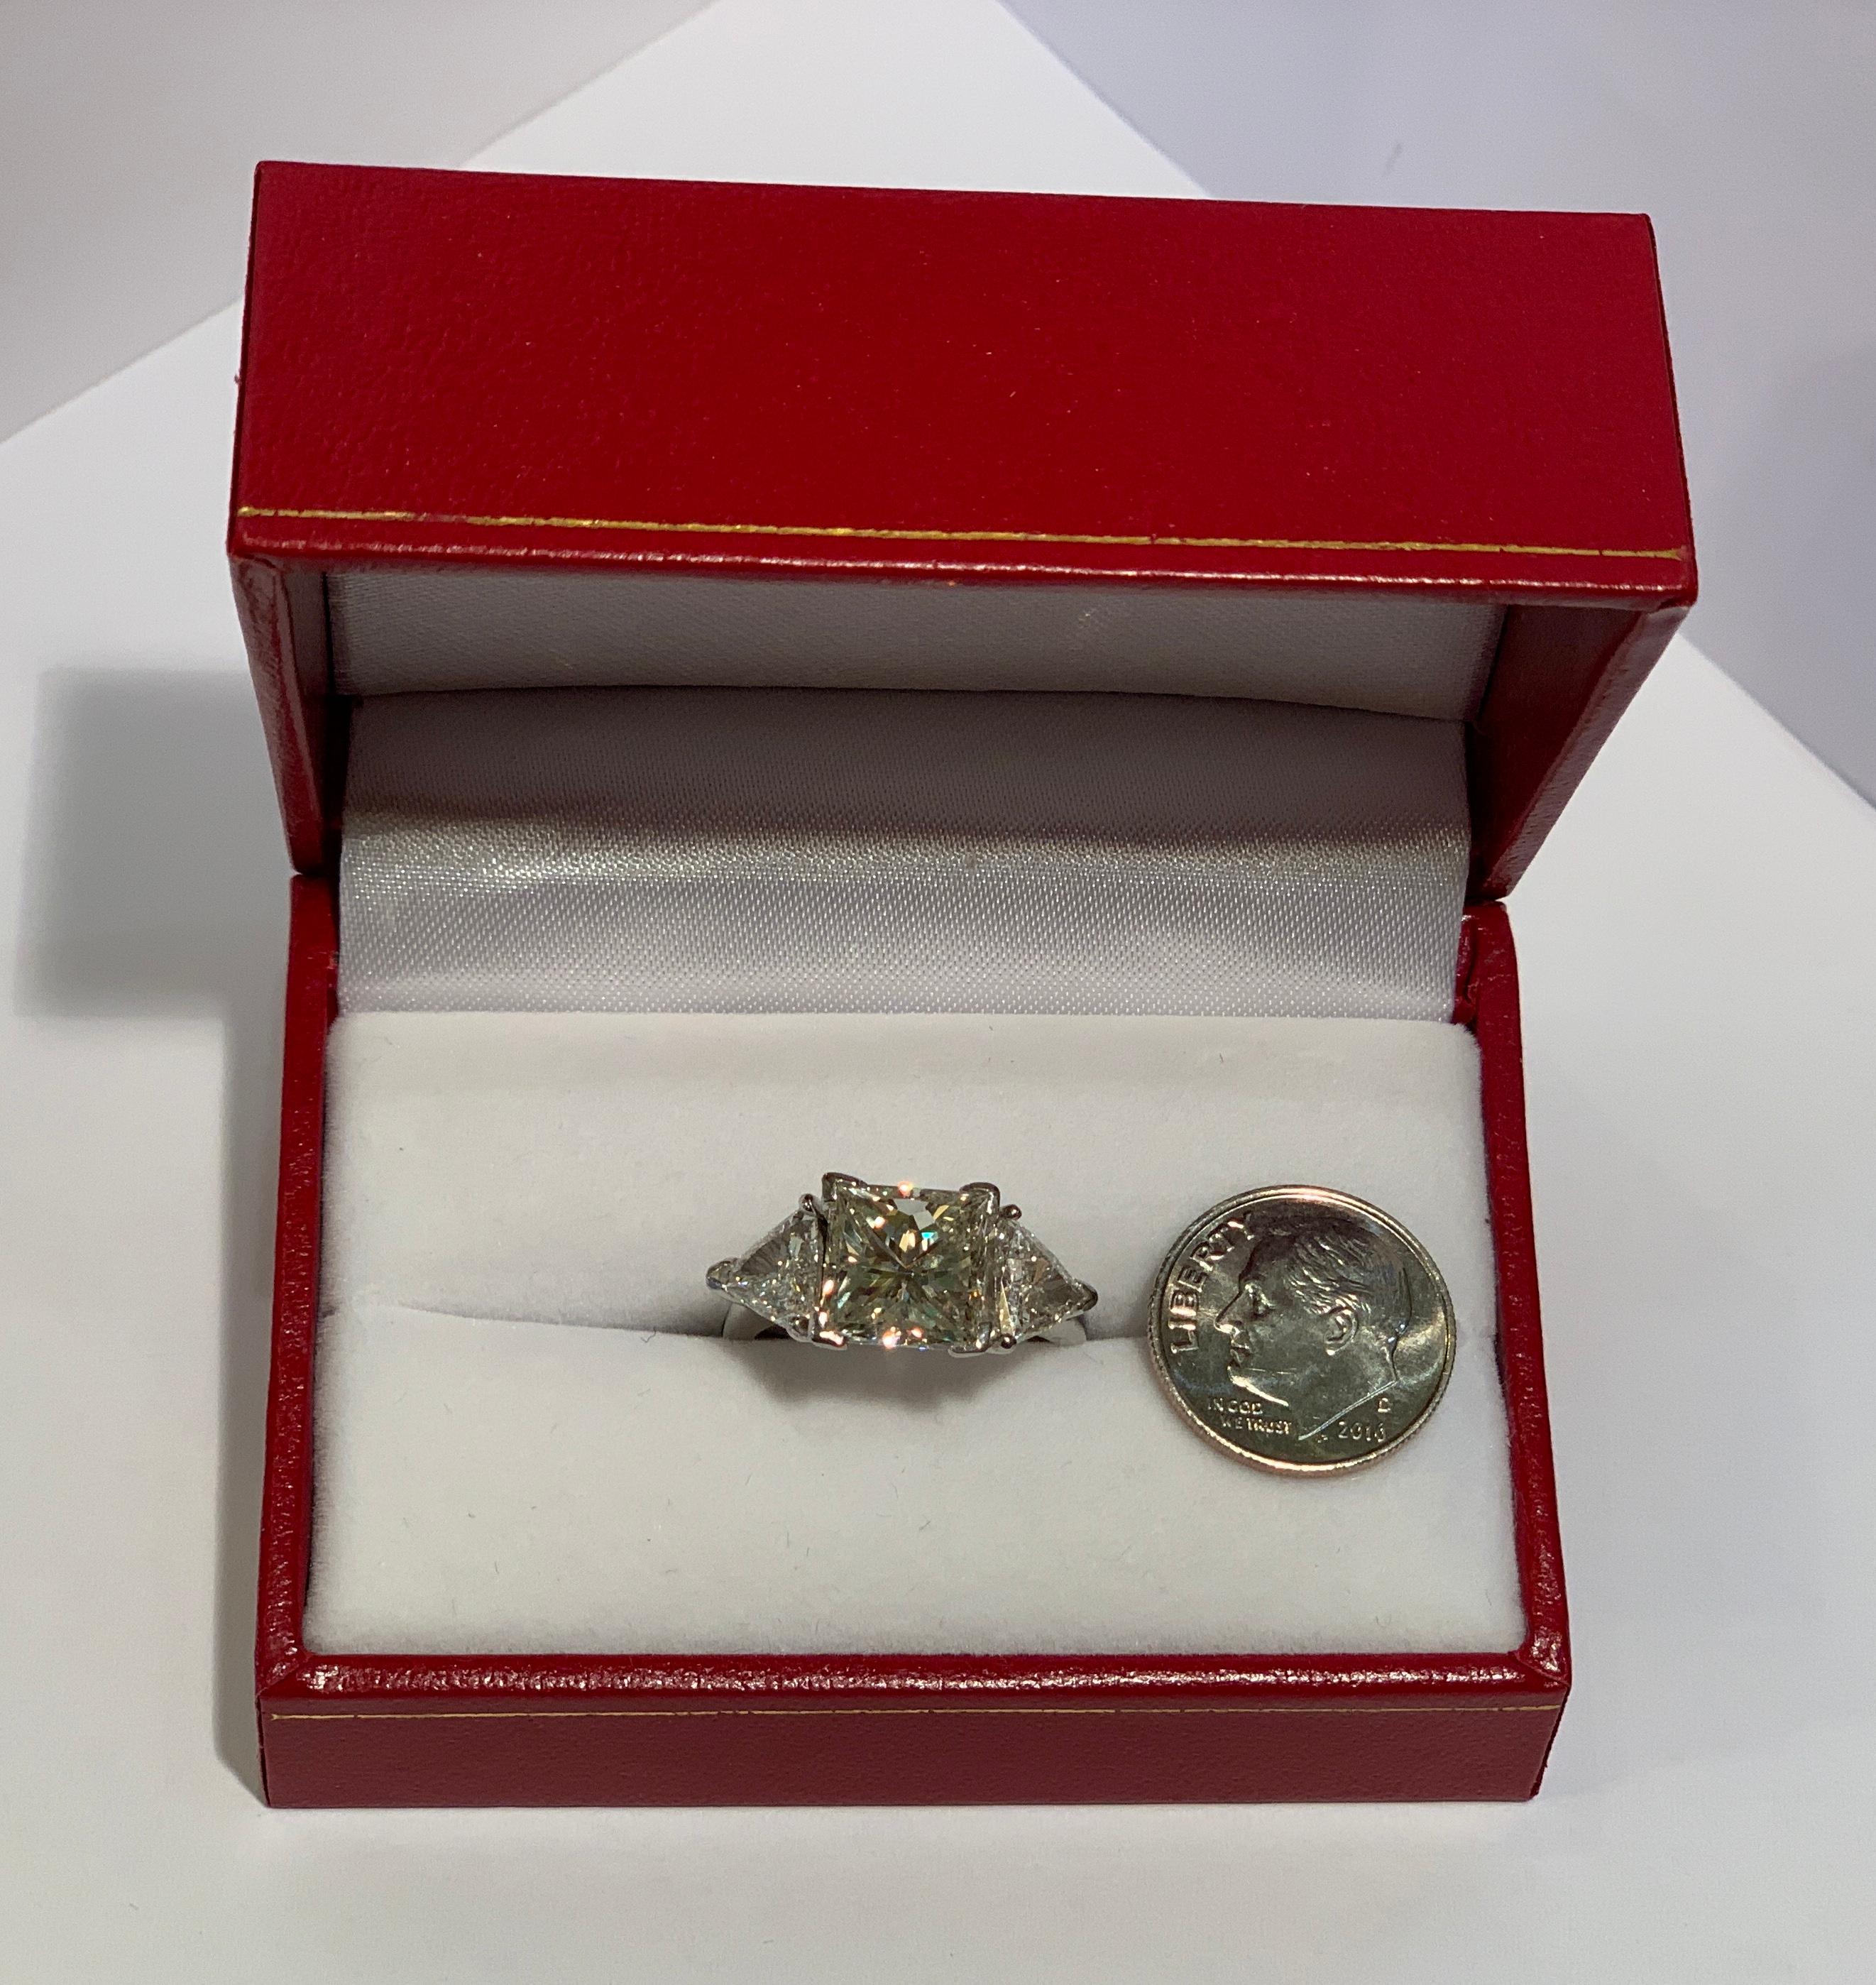 Contemporary GIA Certified VS2 4.13 Carat Princess Diamond Ring With 2 Carat Diamond Sides